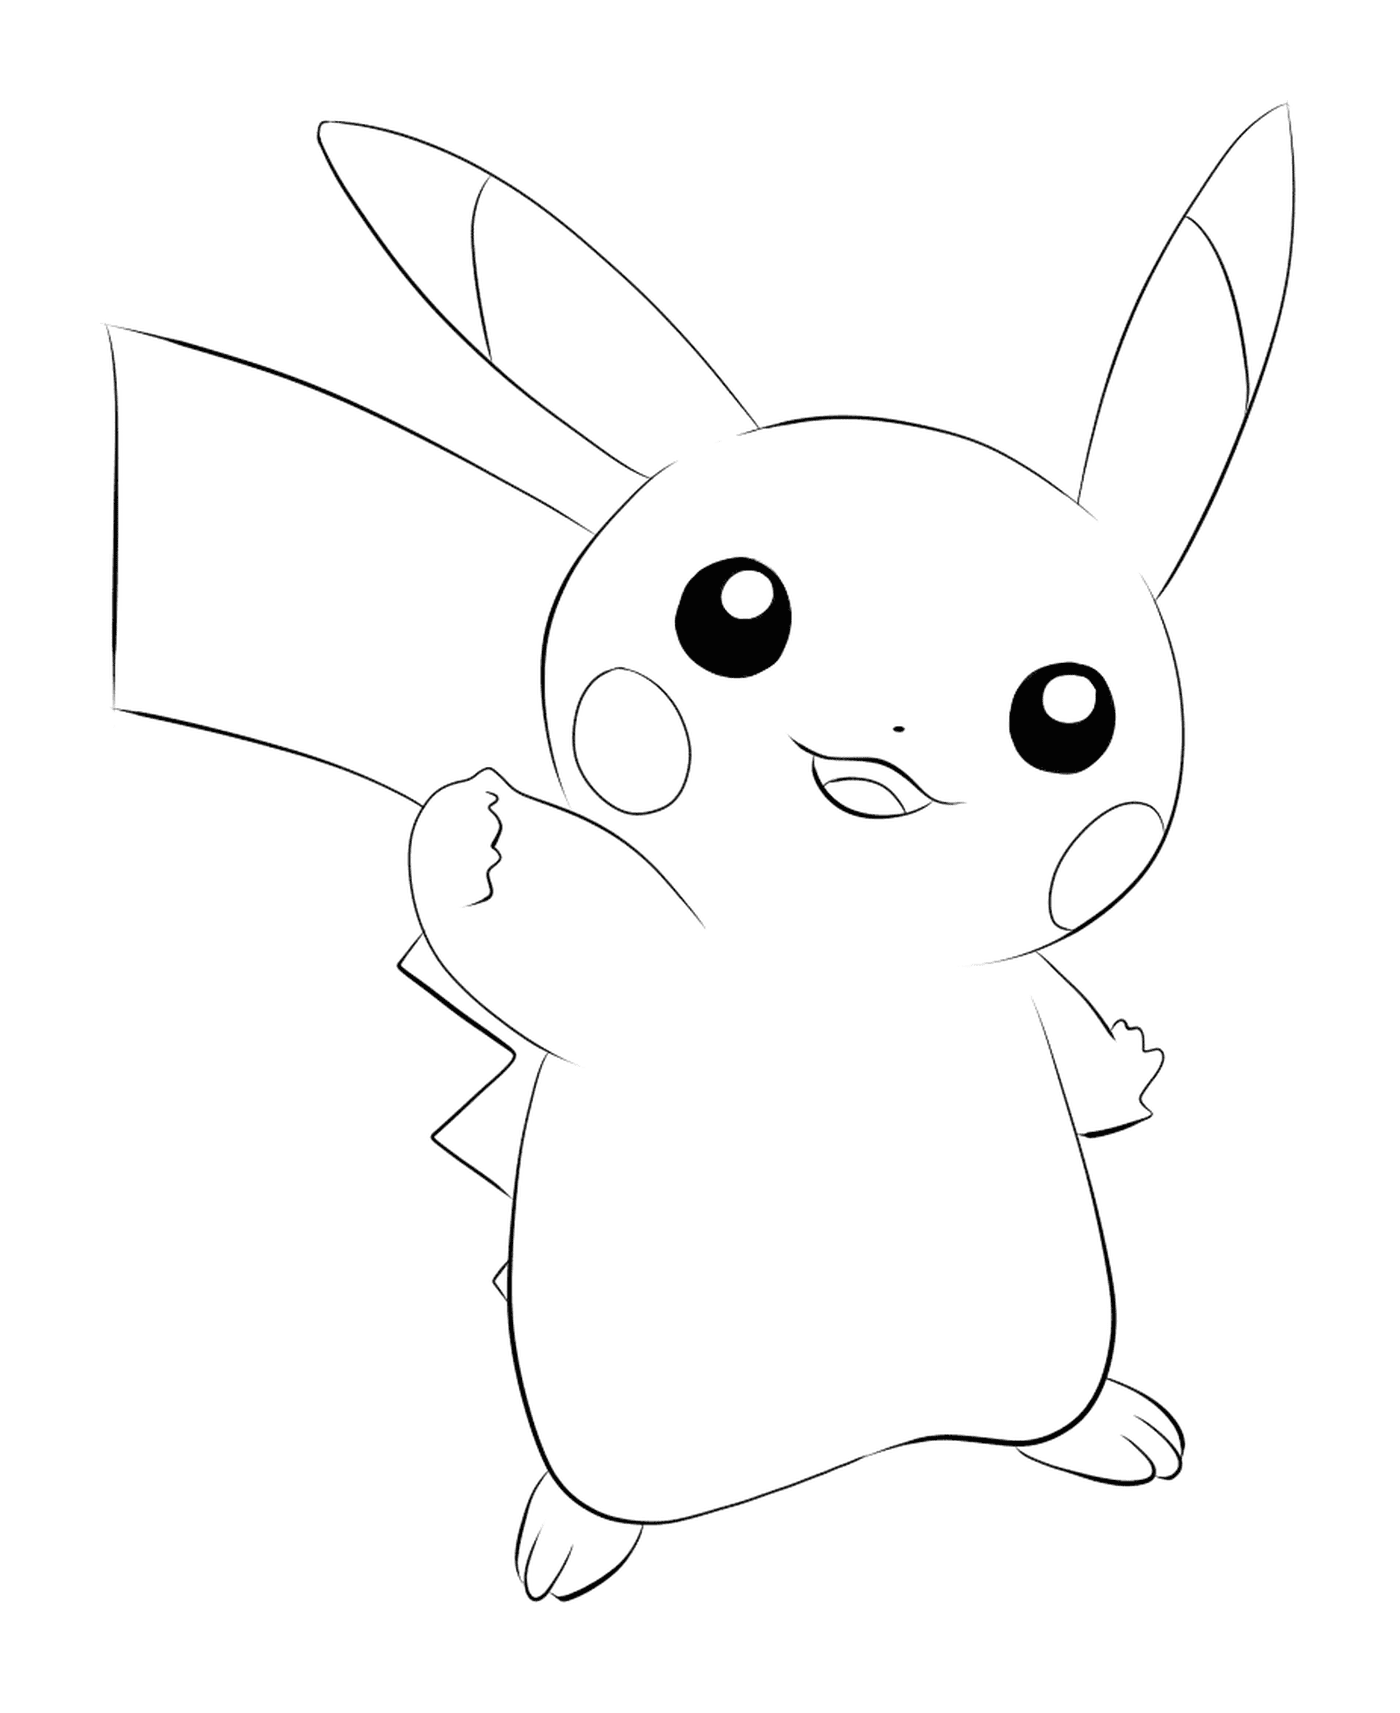  Pikachu, o icônico Pokémon 